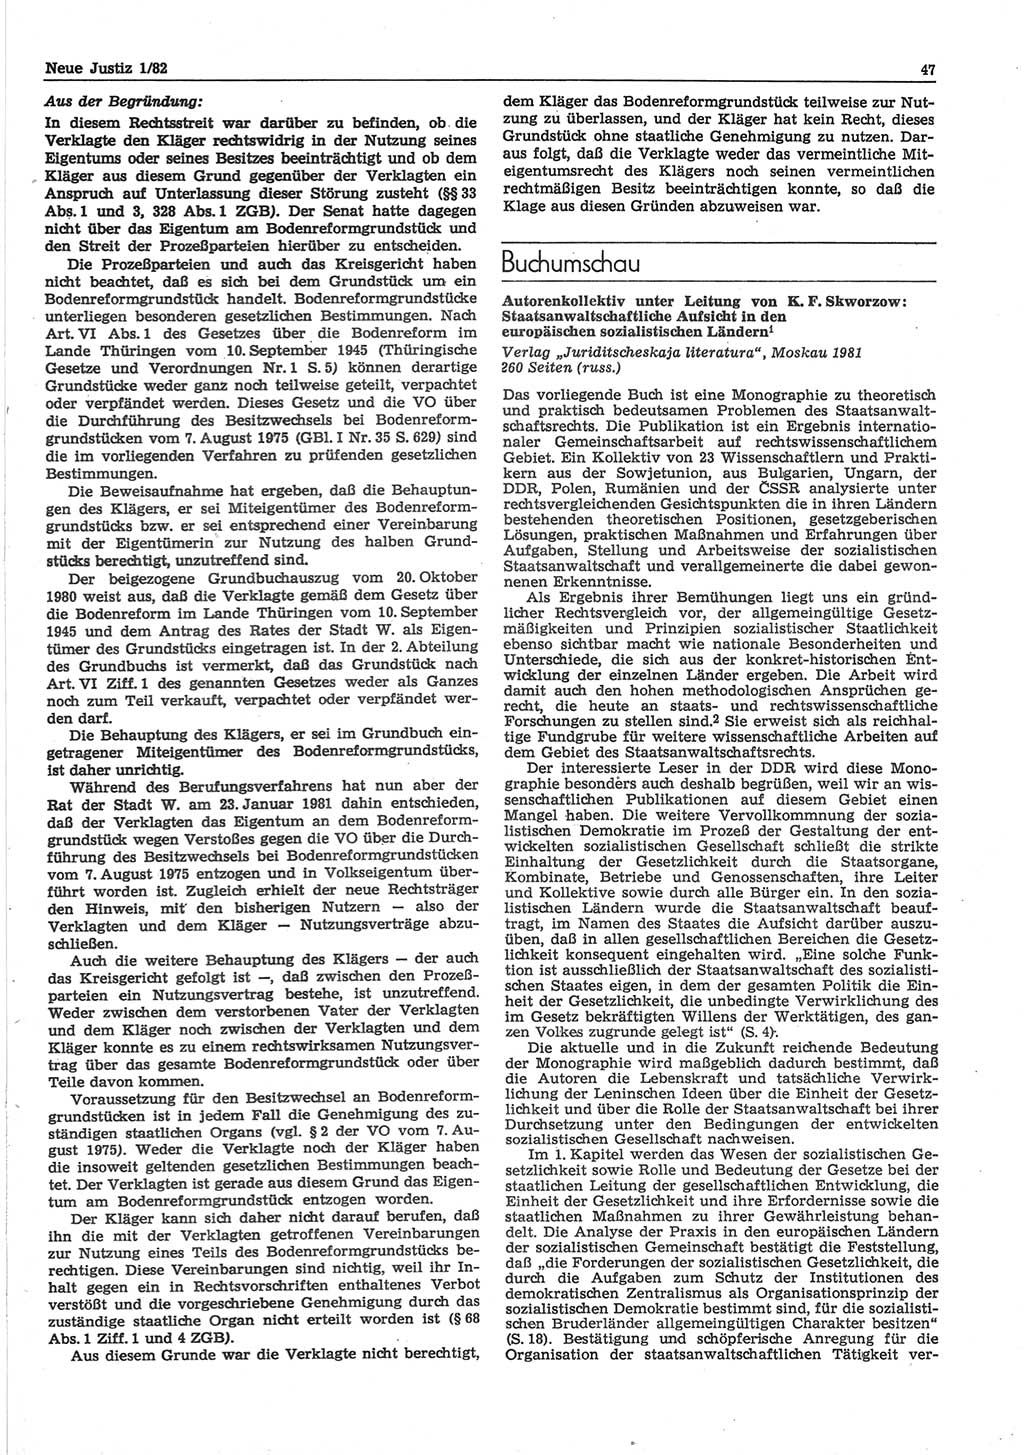 Neue Justiz (NJ), Zeitschrift für sozialistisches Recht und Gesetzlichkeit [Deutsche Demokratische Republik (DDR)], 36. Jahrgang 1982, Seite 47 (NJ DDR 1982, S. 47)